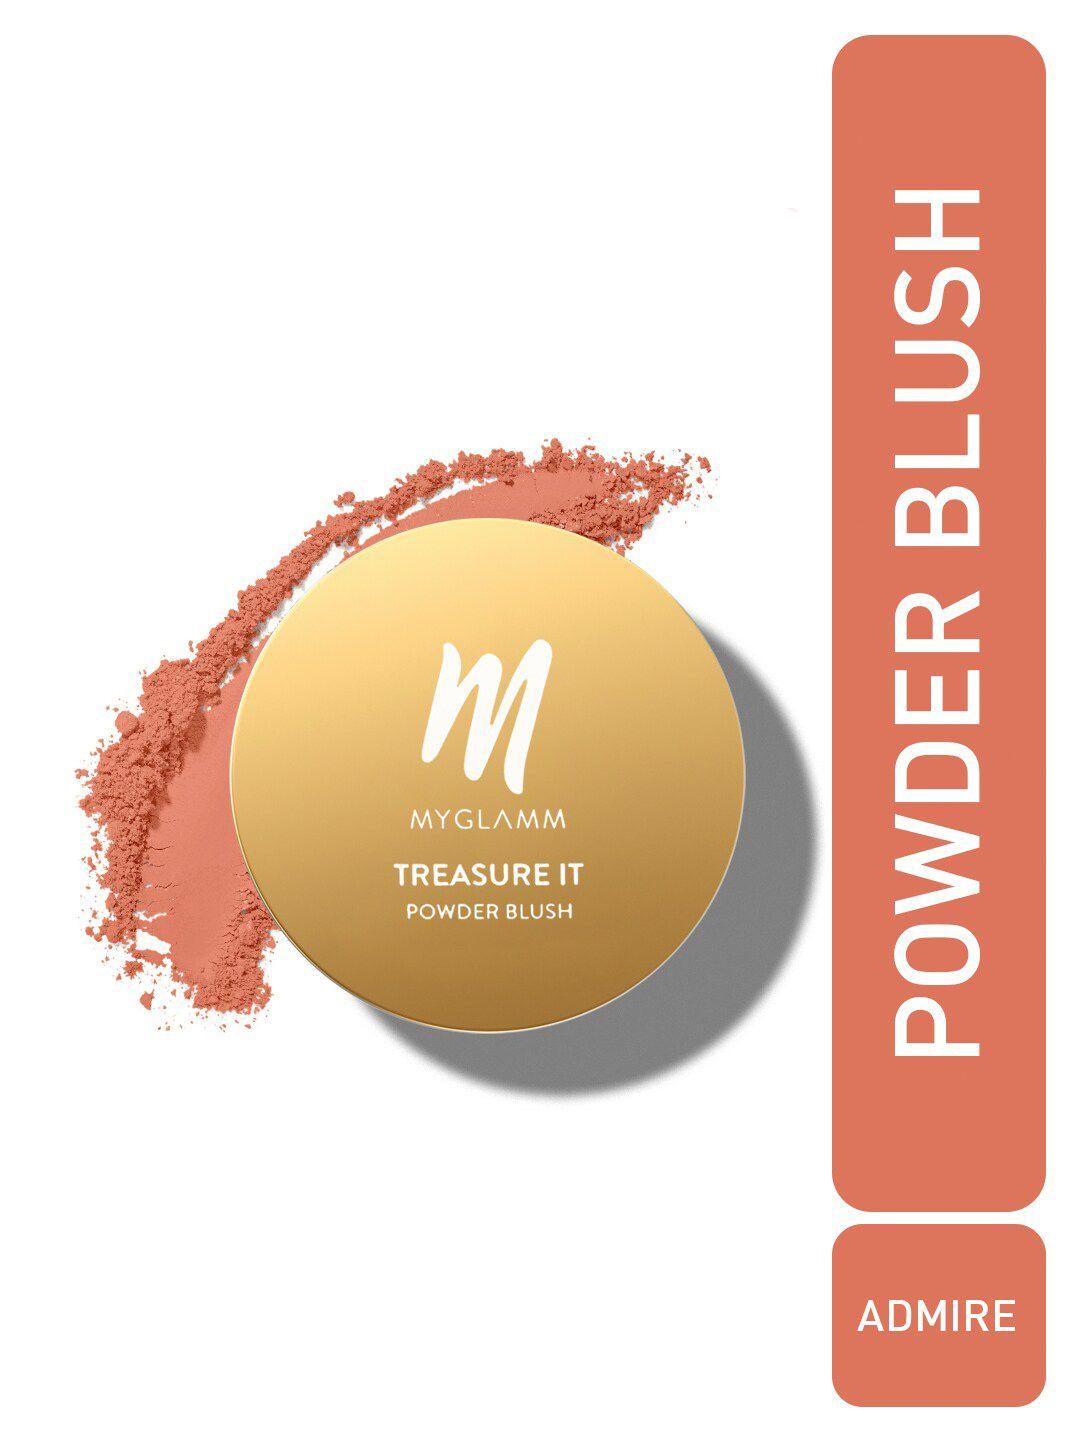 myglamm treasure it powder matte blush - 4g - admire